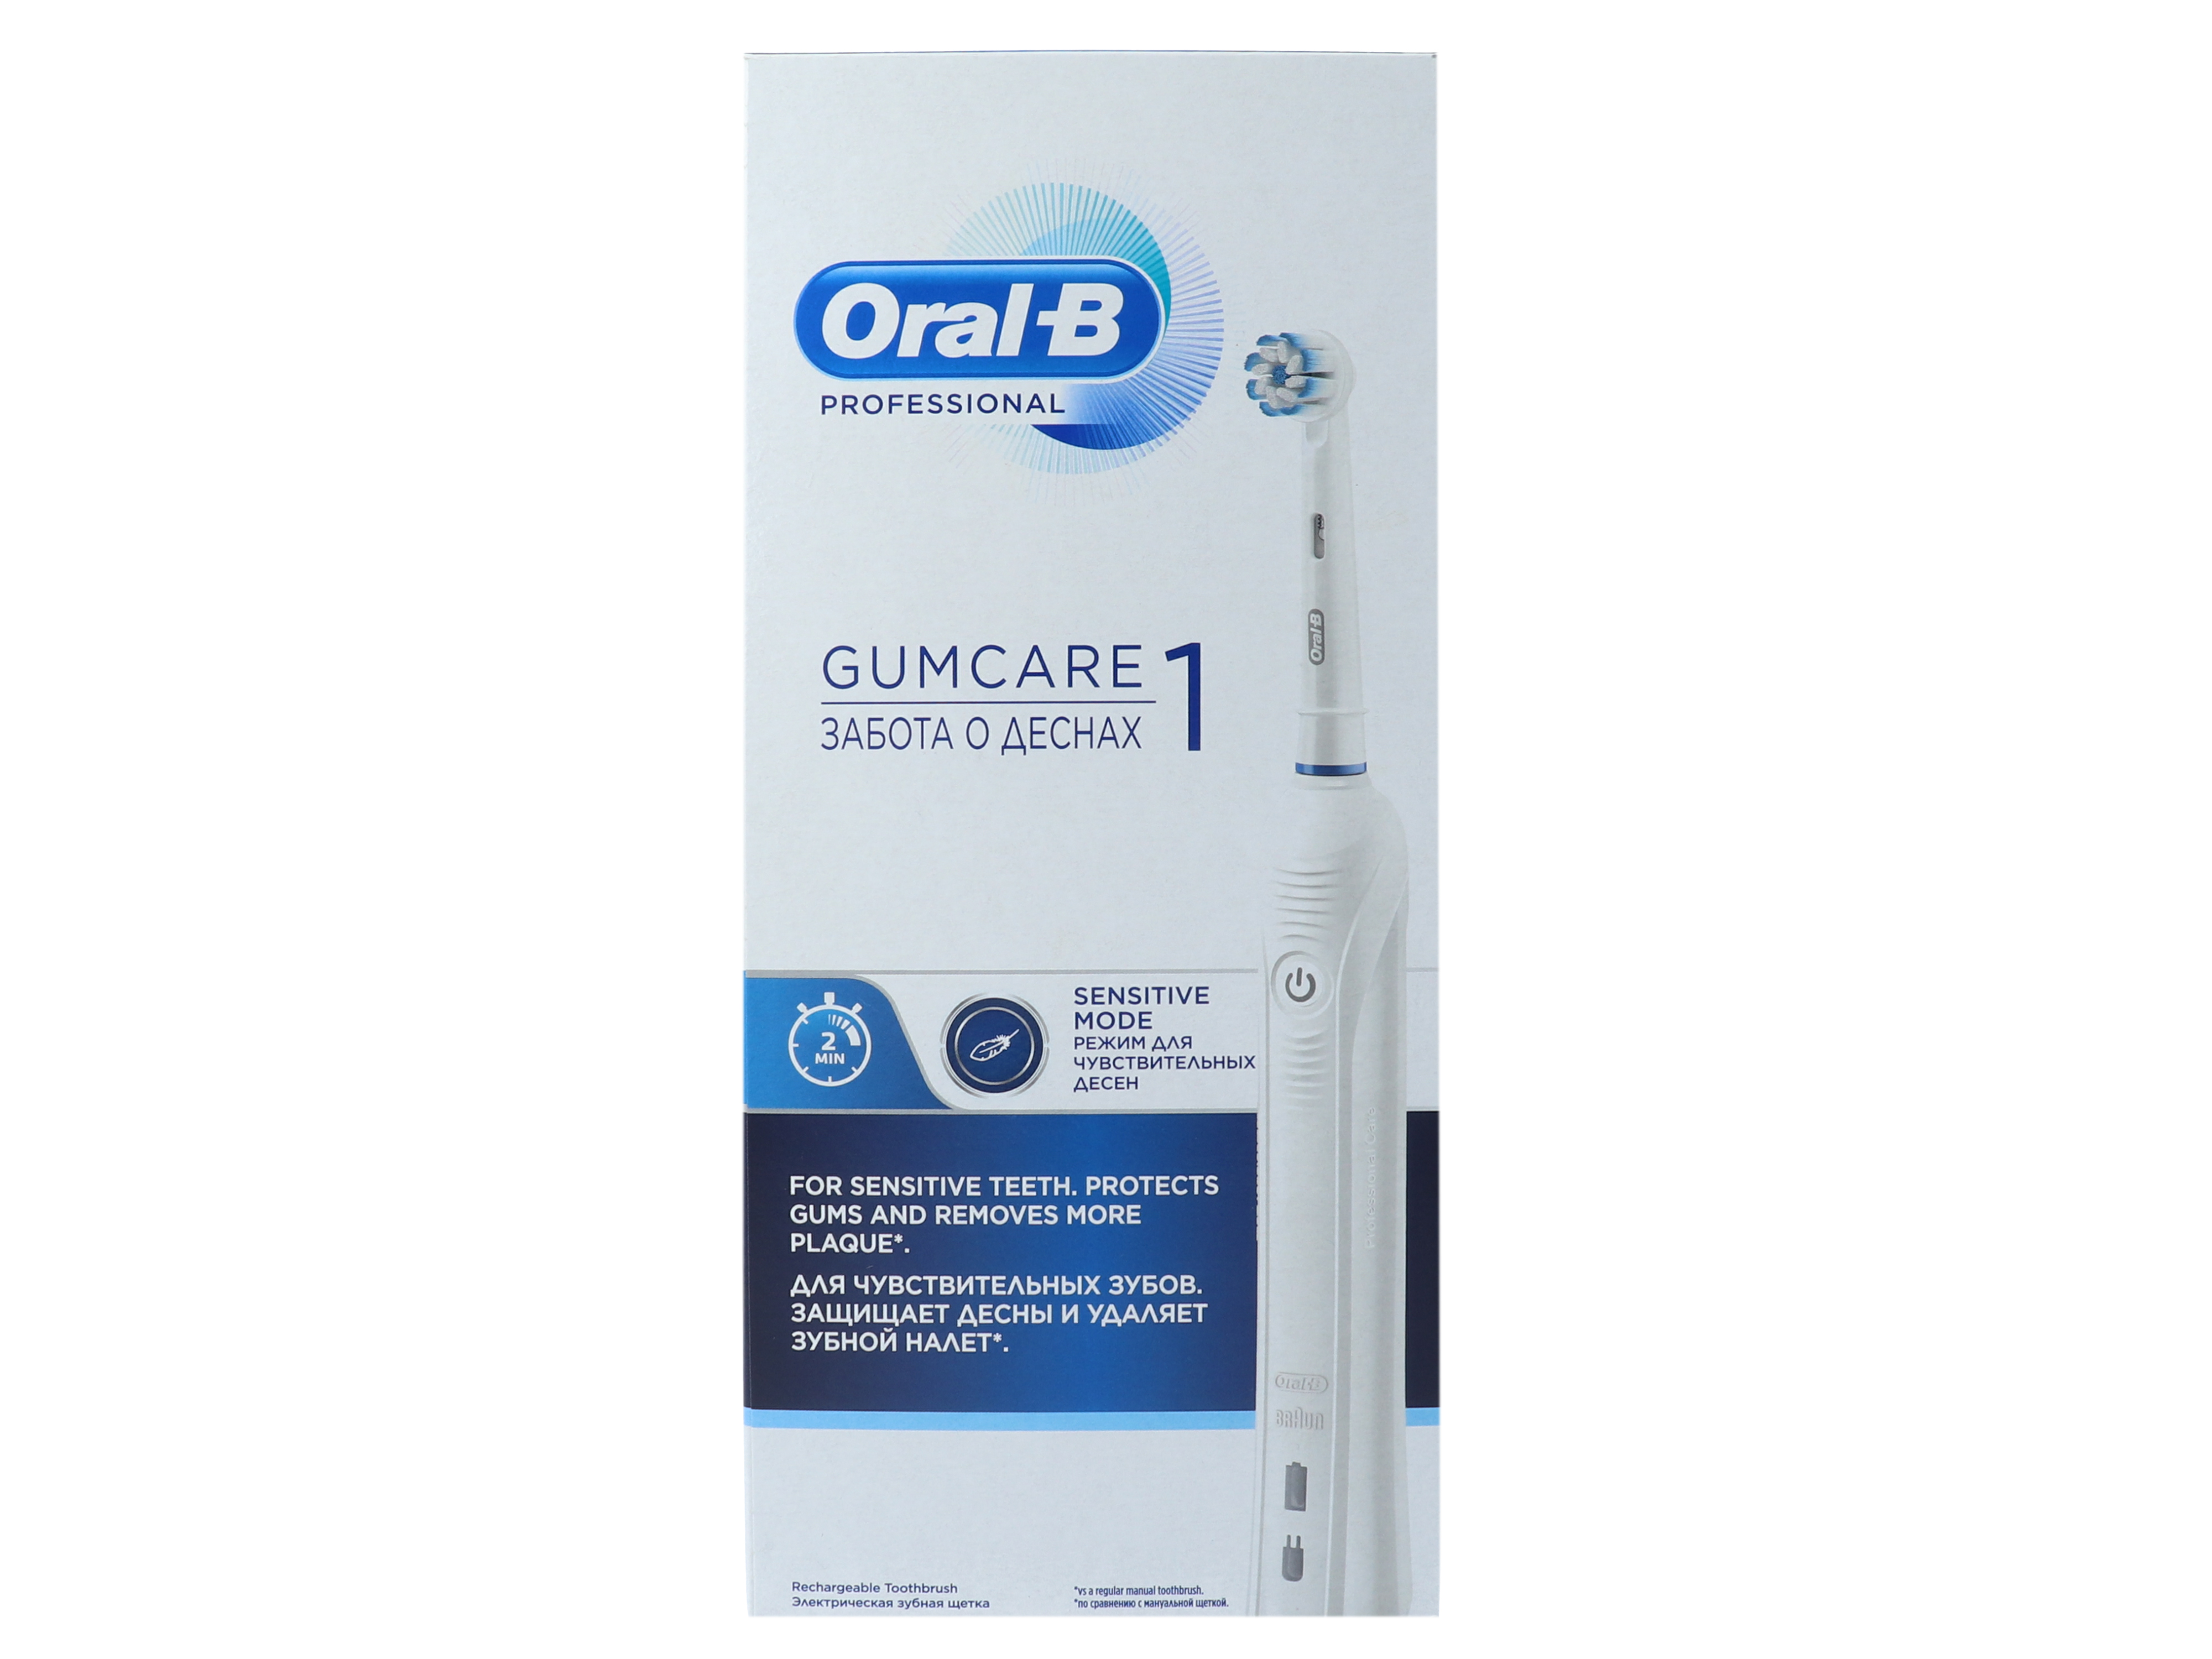 Oral-B Oral-B Professional Gumcare 1, 1 stk